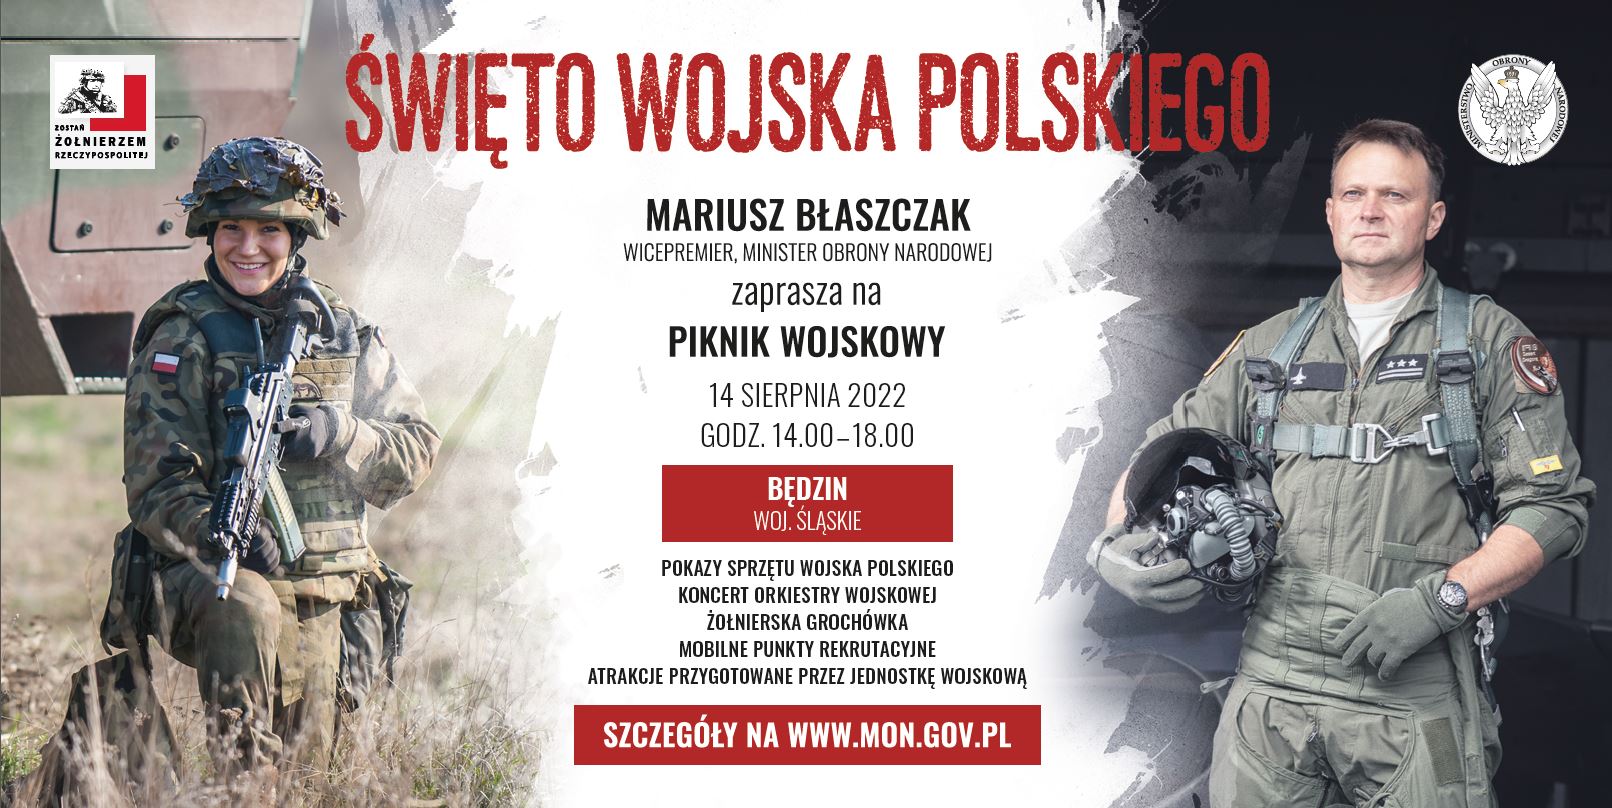 Plakat promujący Święto Wojska Polskiego